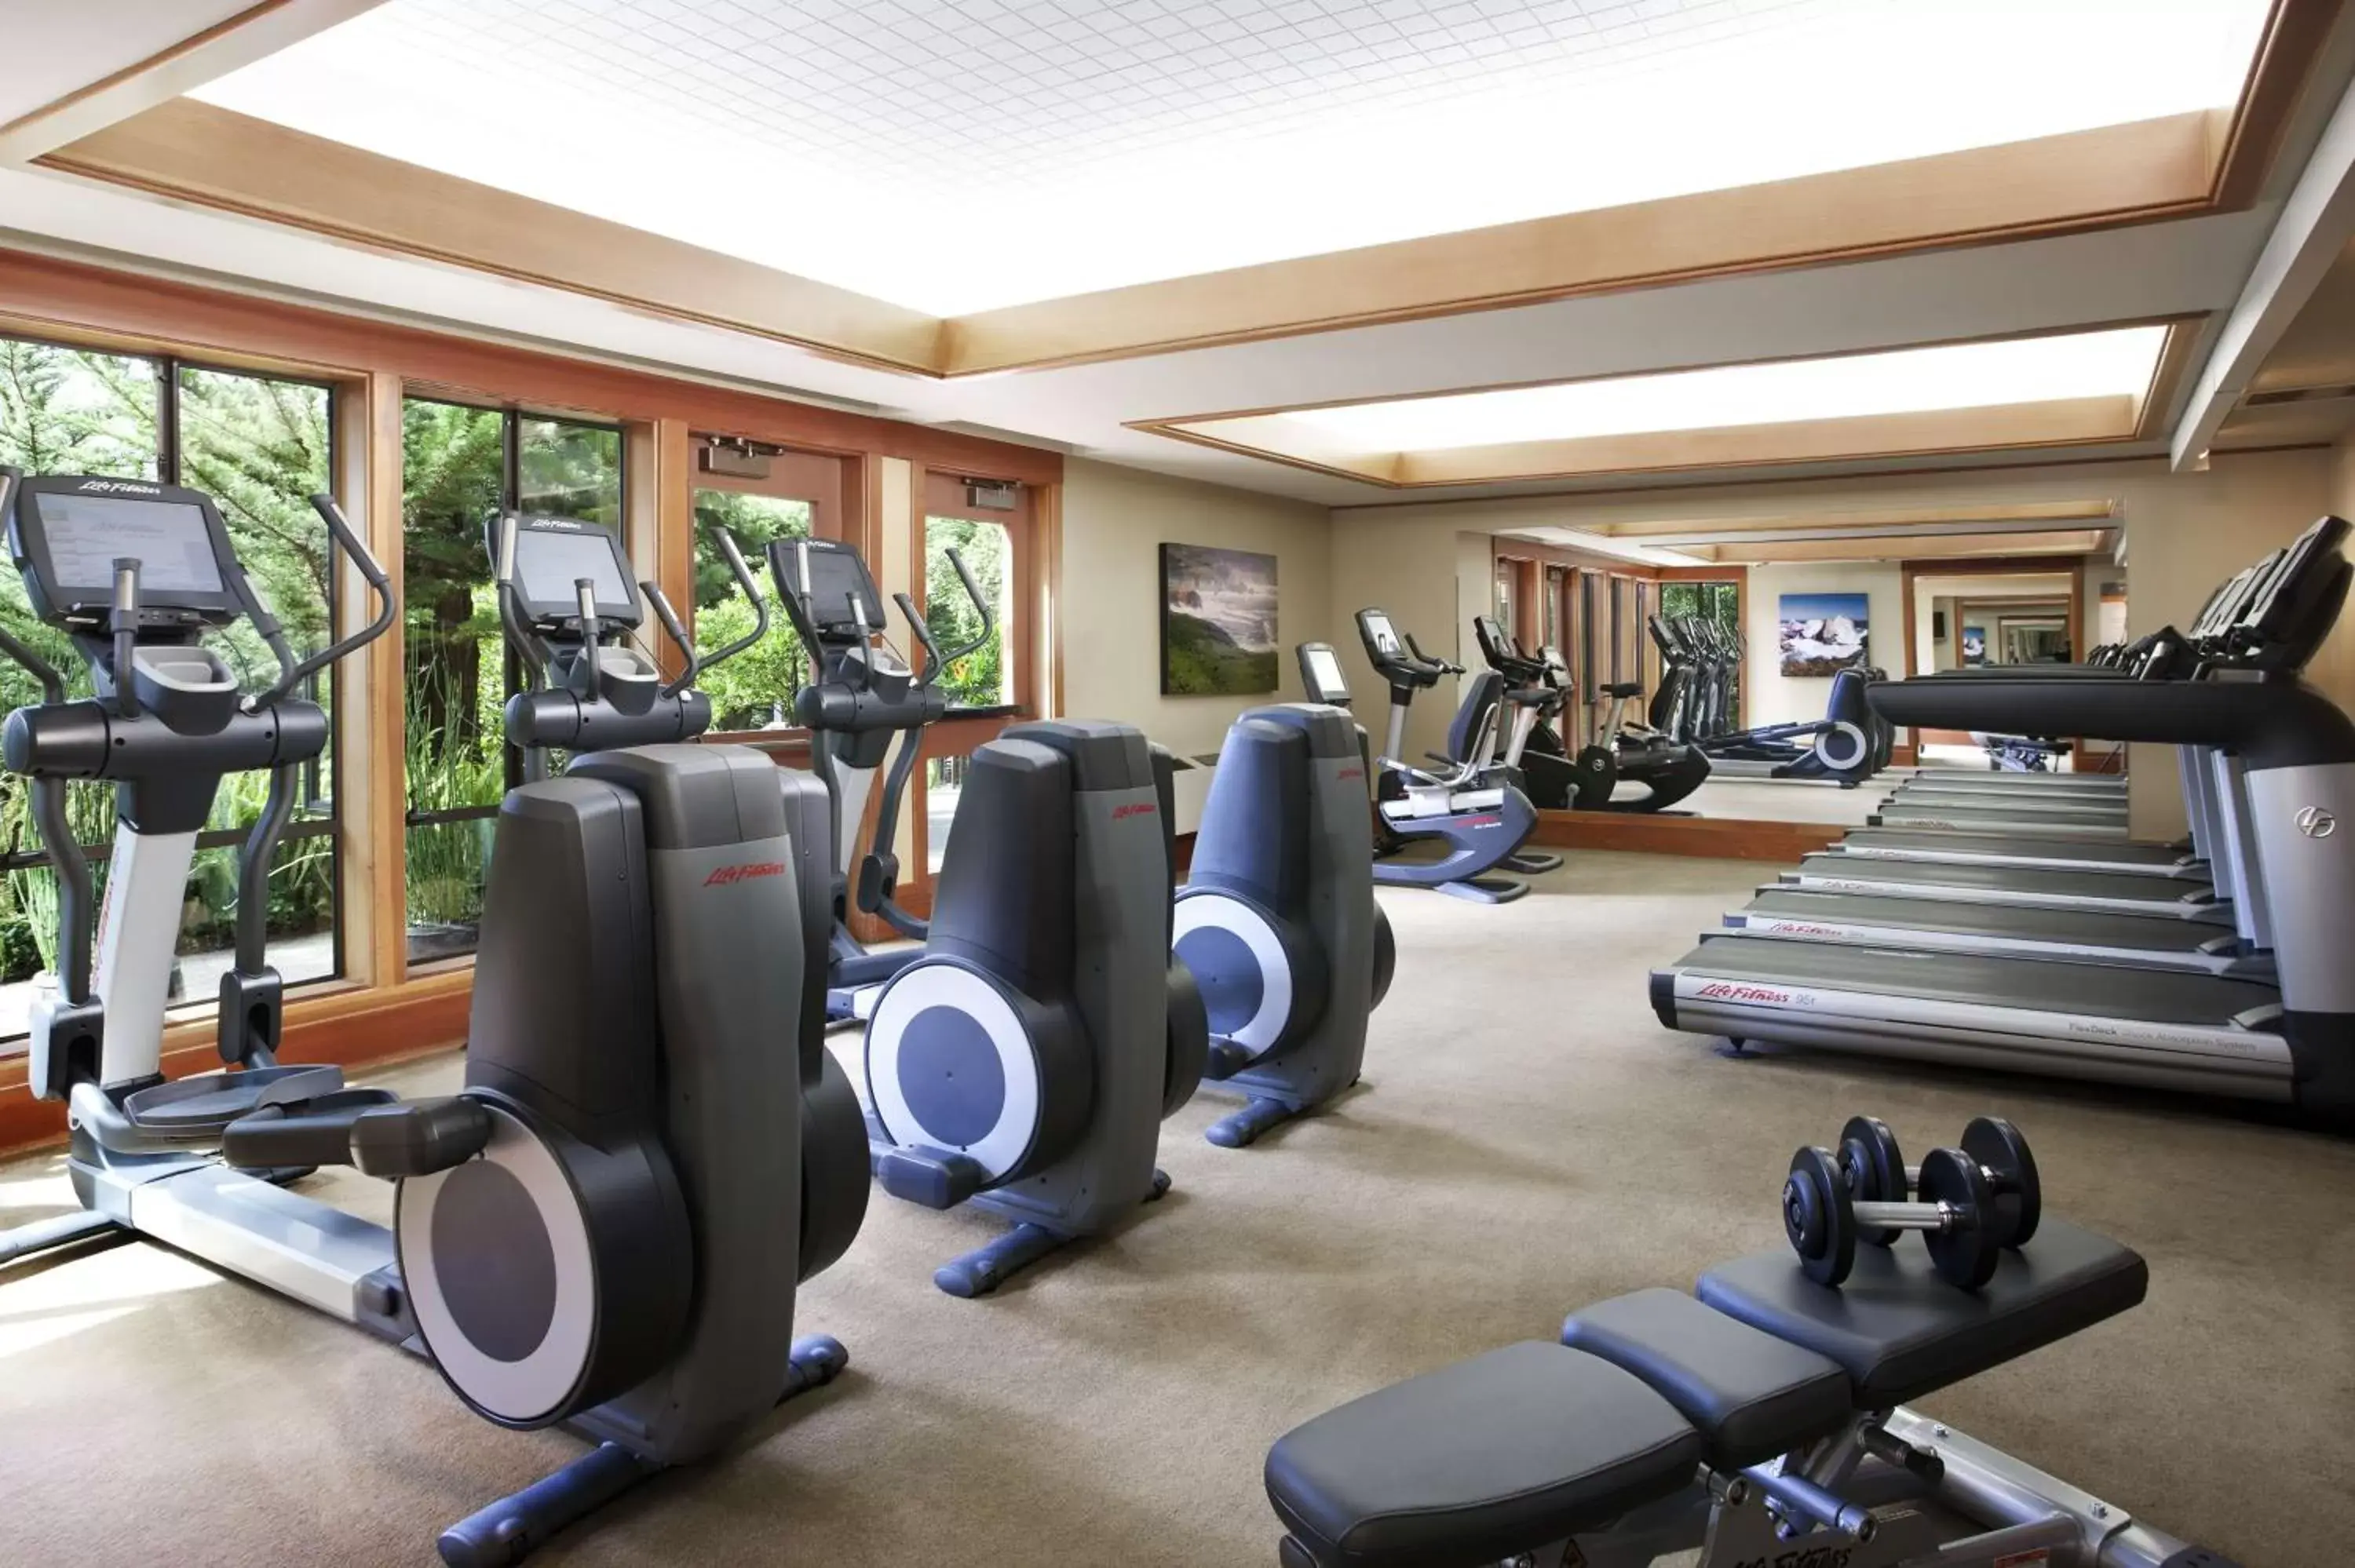 Fitness centre/facilities, Fitness Center/Facilities in Hyatt Vacation Club at Highlands Inn